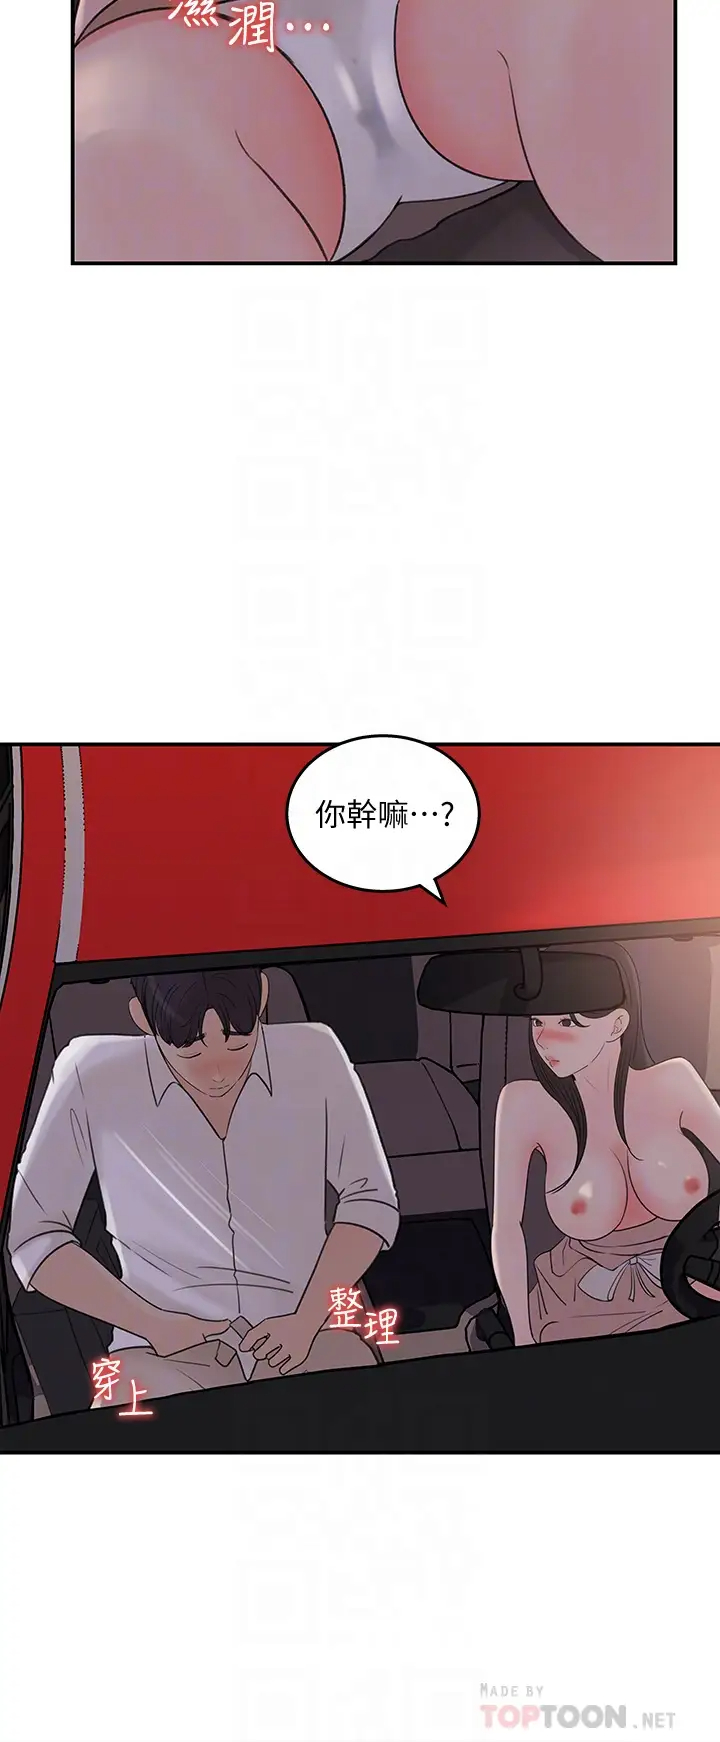 韩国污漫画 女神收藏清單 第33话车内的炙热喘息 14